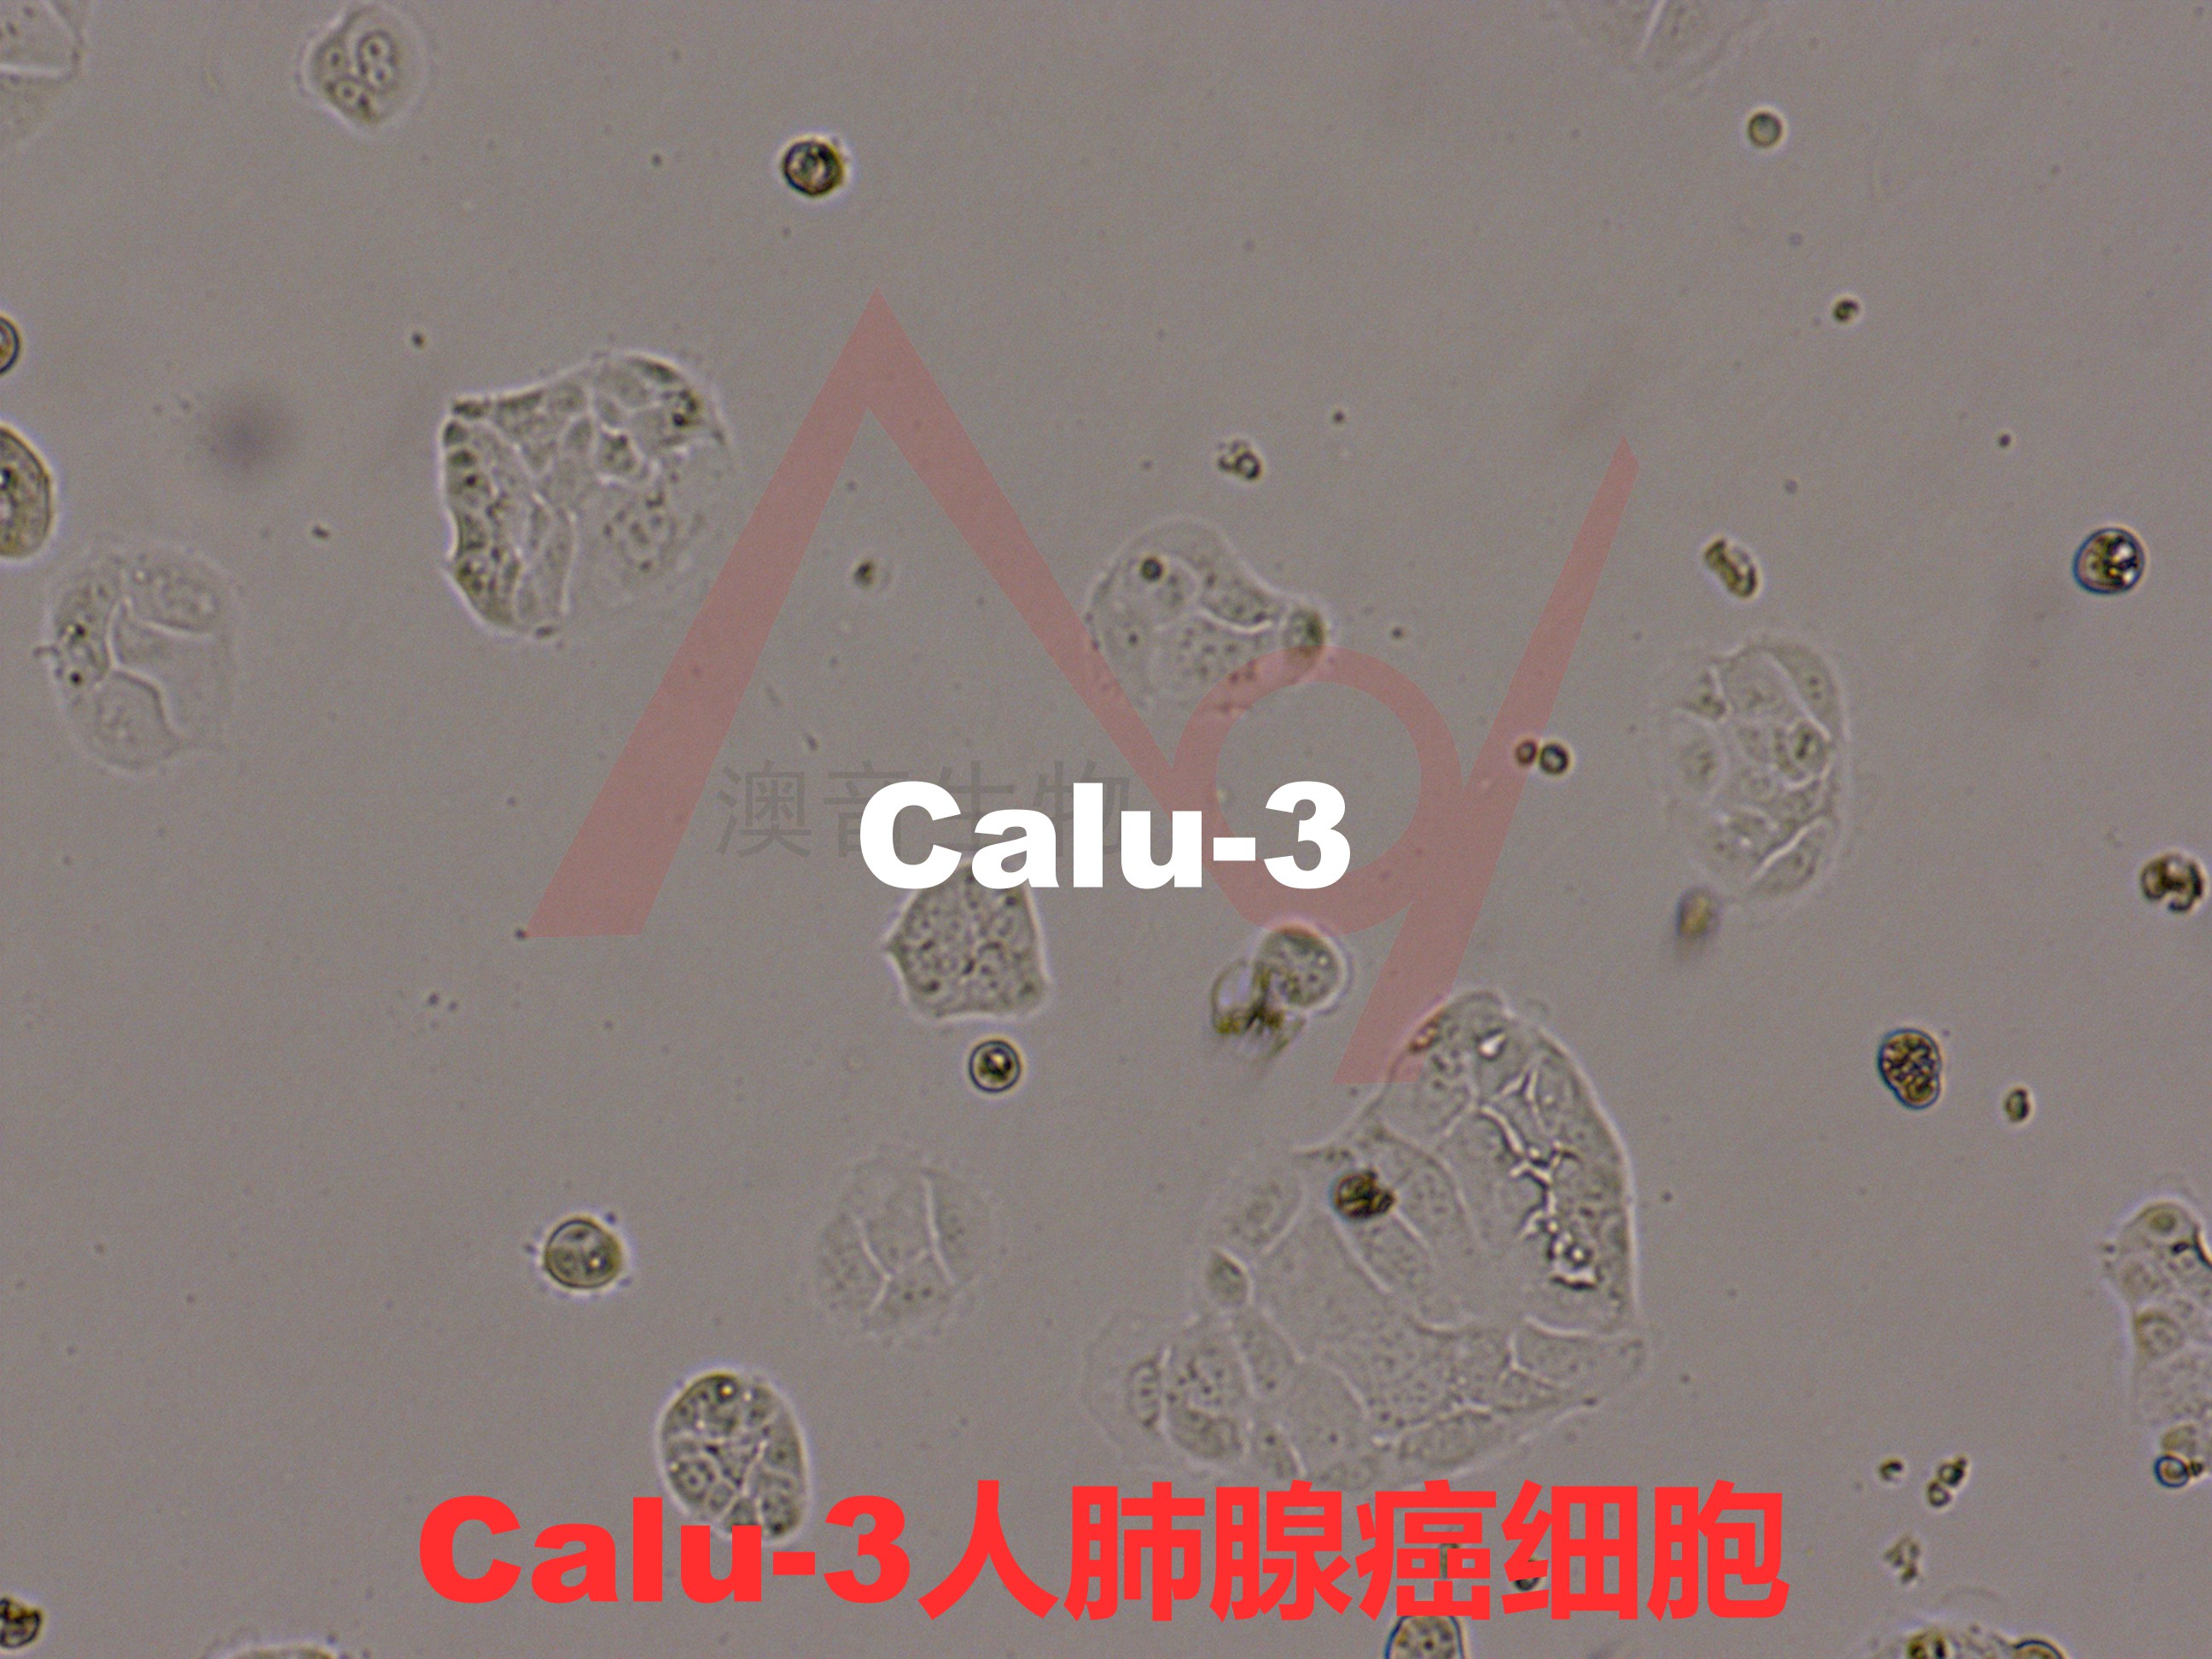 Calu-3[CaLu-3; CALU-3; Calu 3; Calu3; CALU3]肺腺癌 (胸水)